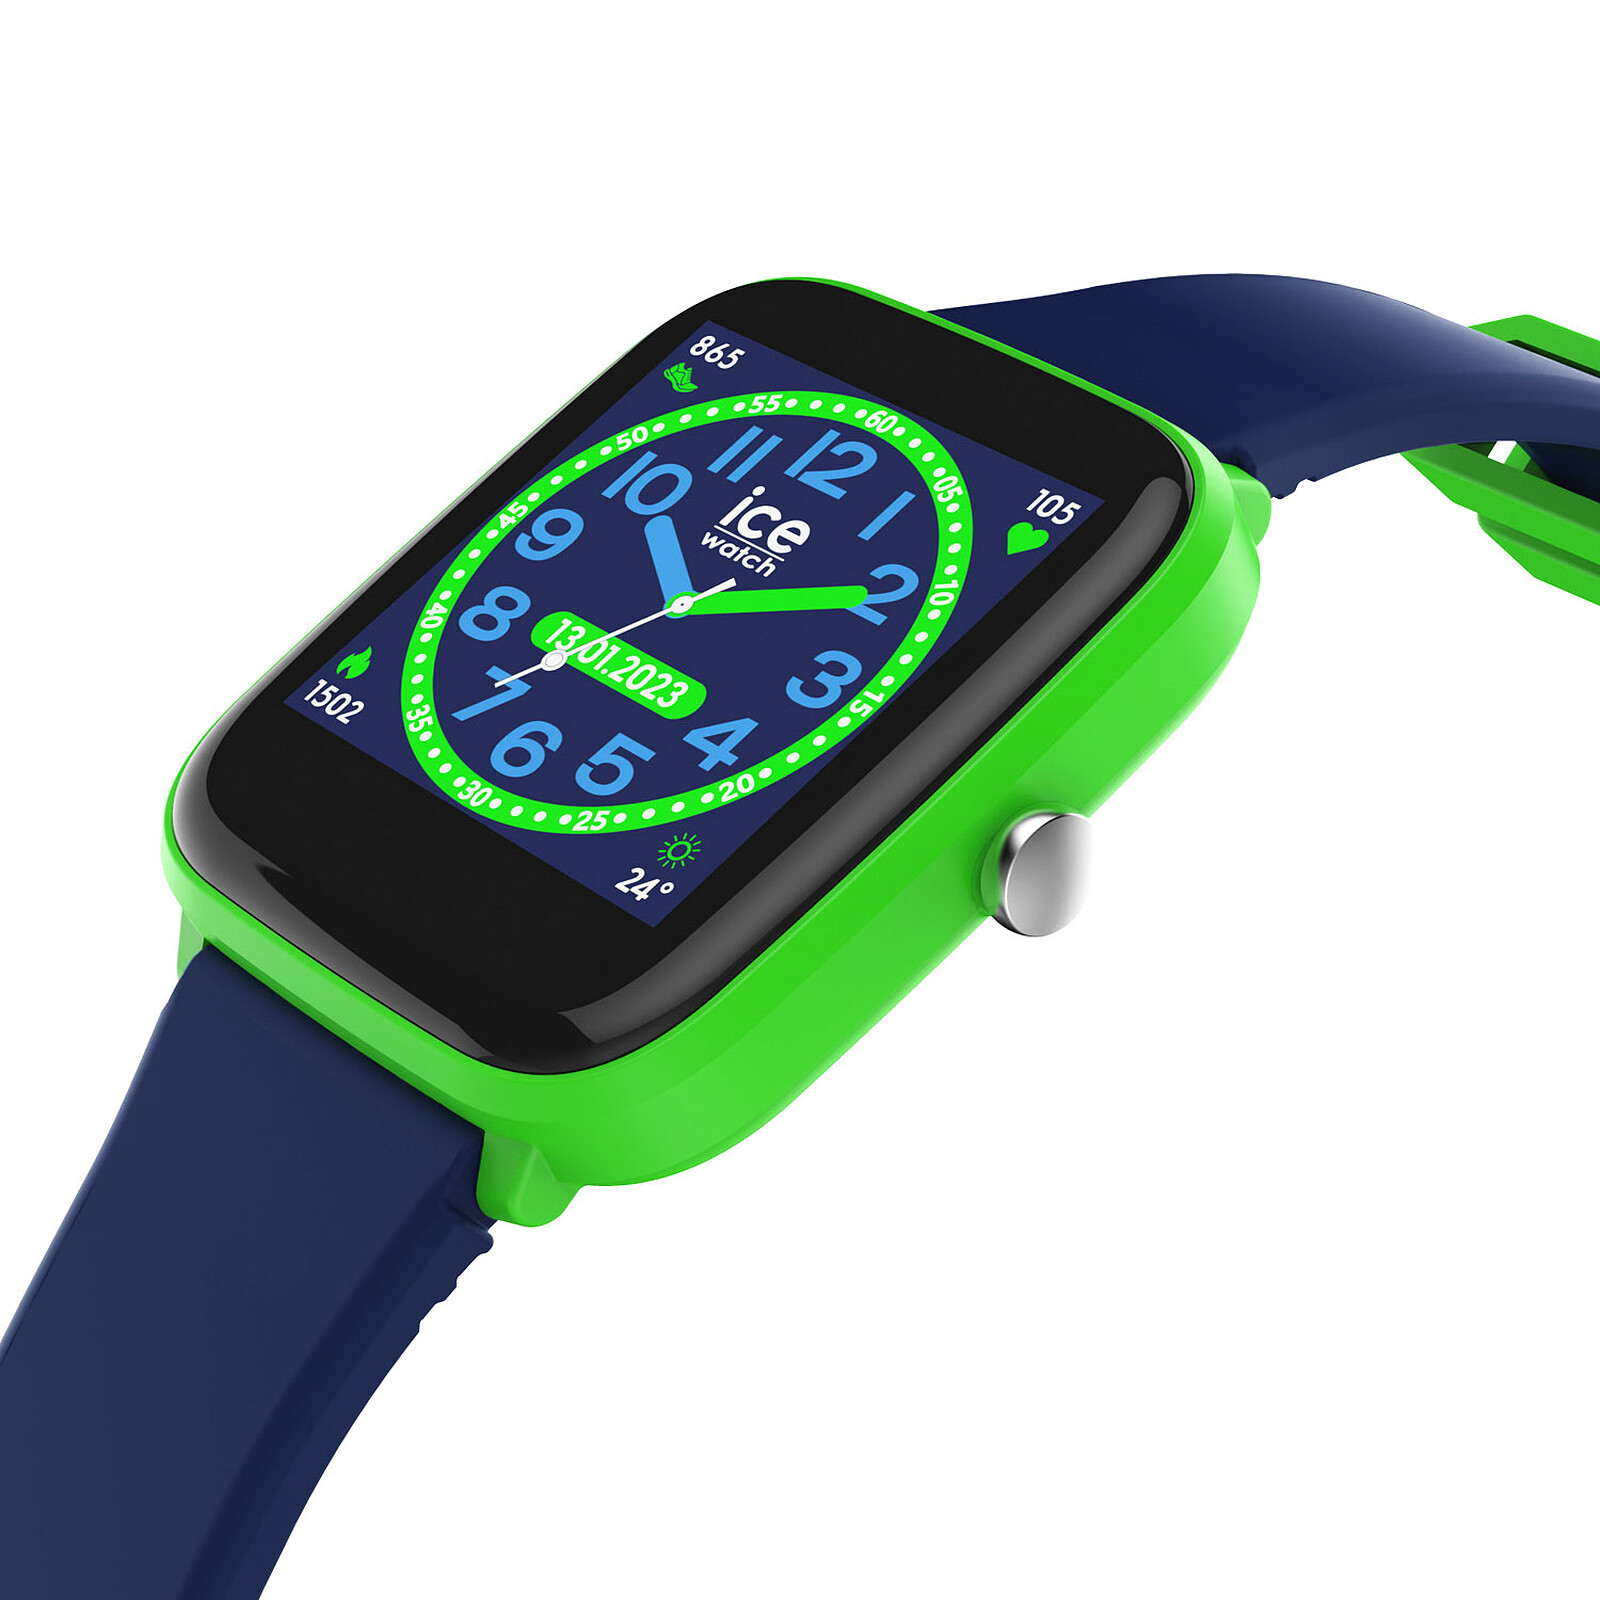 Montre junior Ice Watch connectée Ice Smart One Modèle Bleu